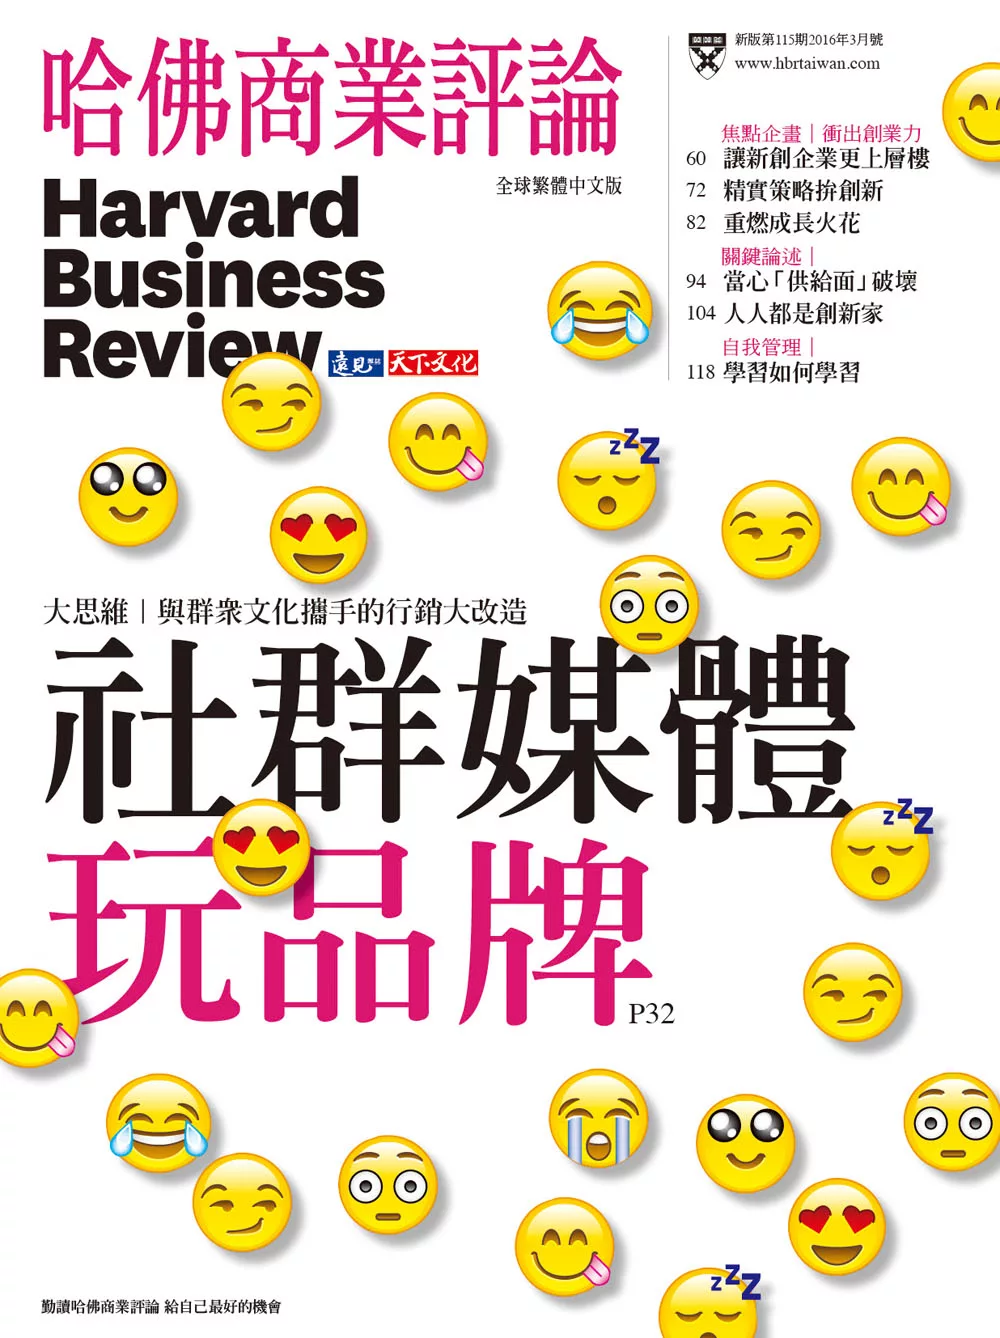 哈佛商業評論全球中文版 3月號 / 2016年 第115期 (電子雜誌)